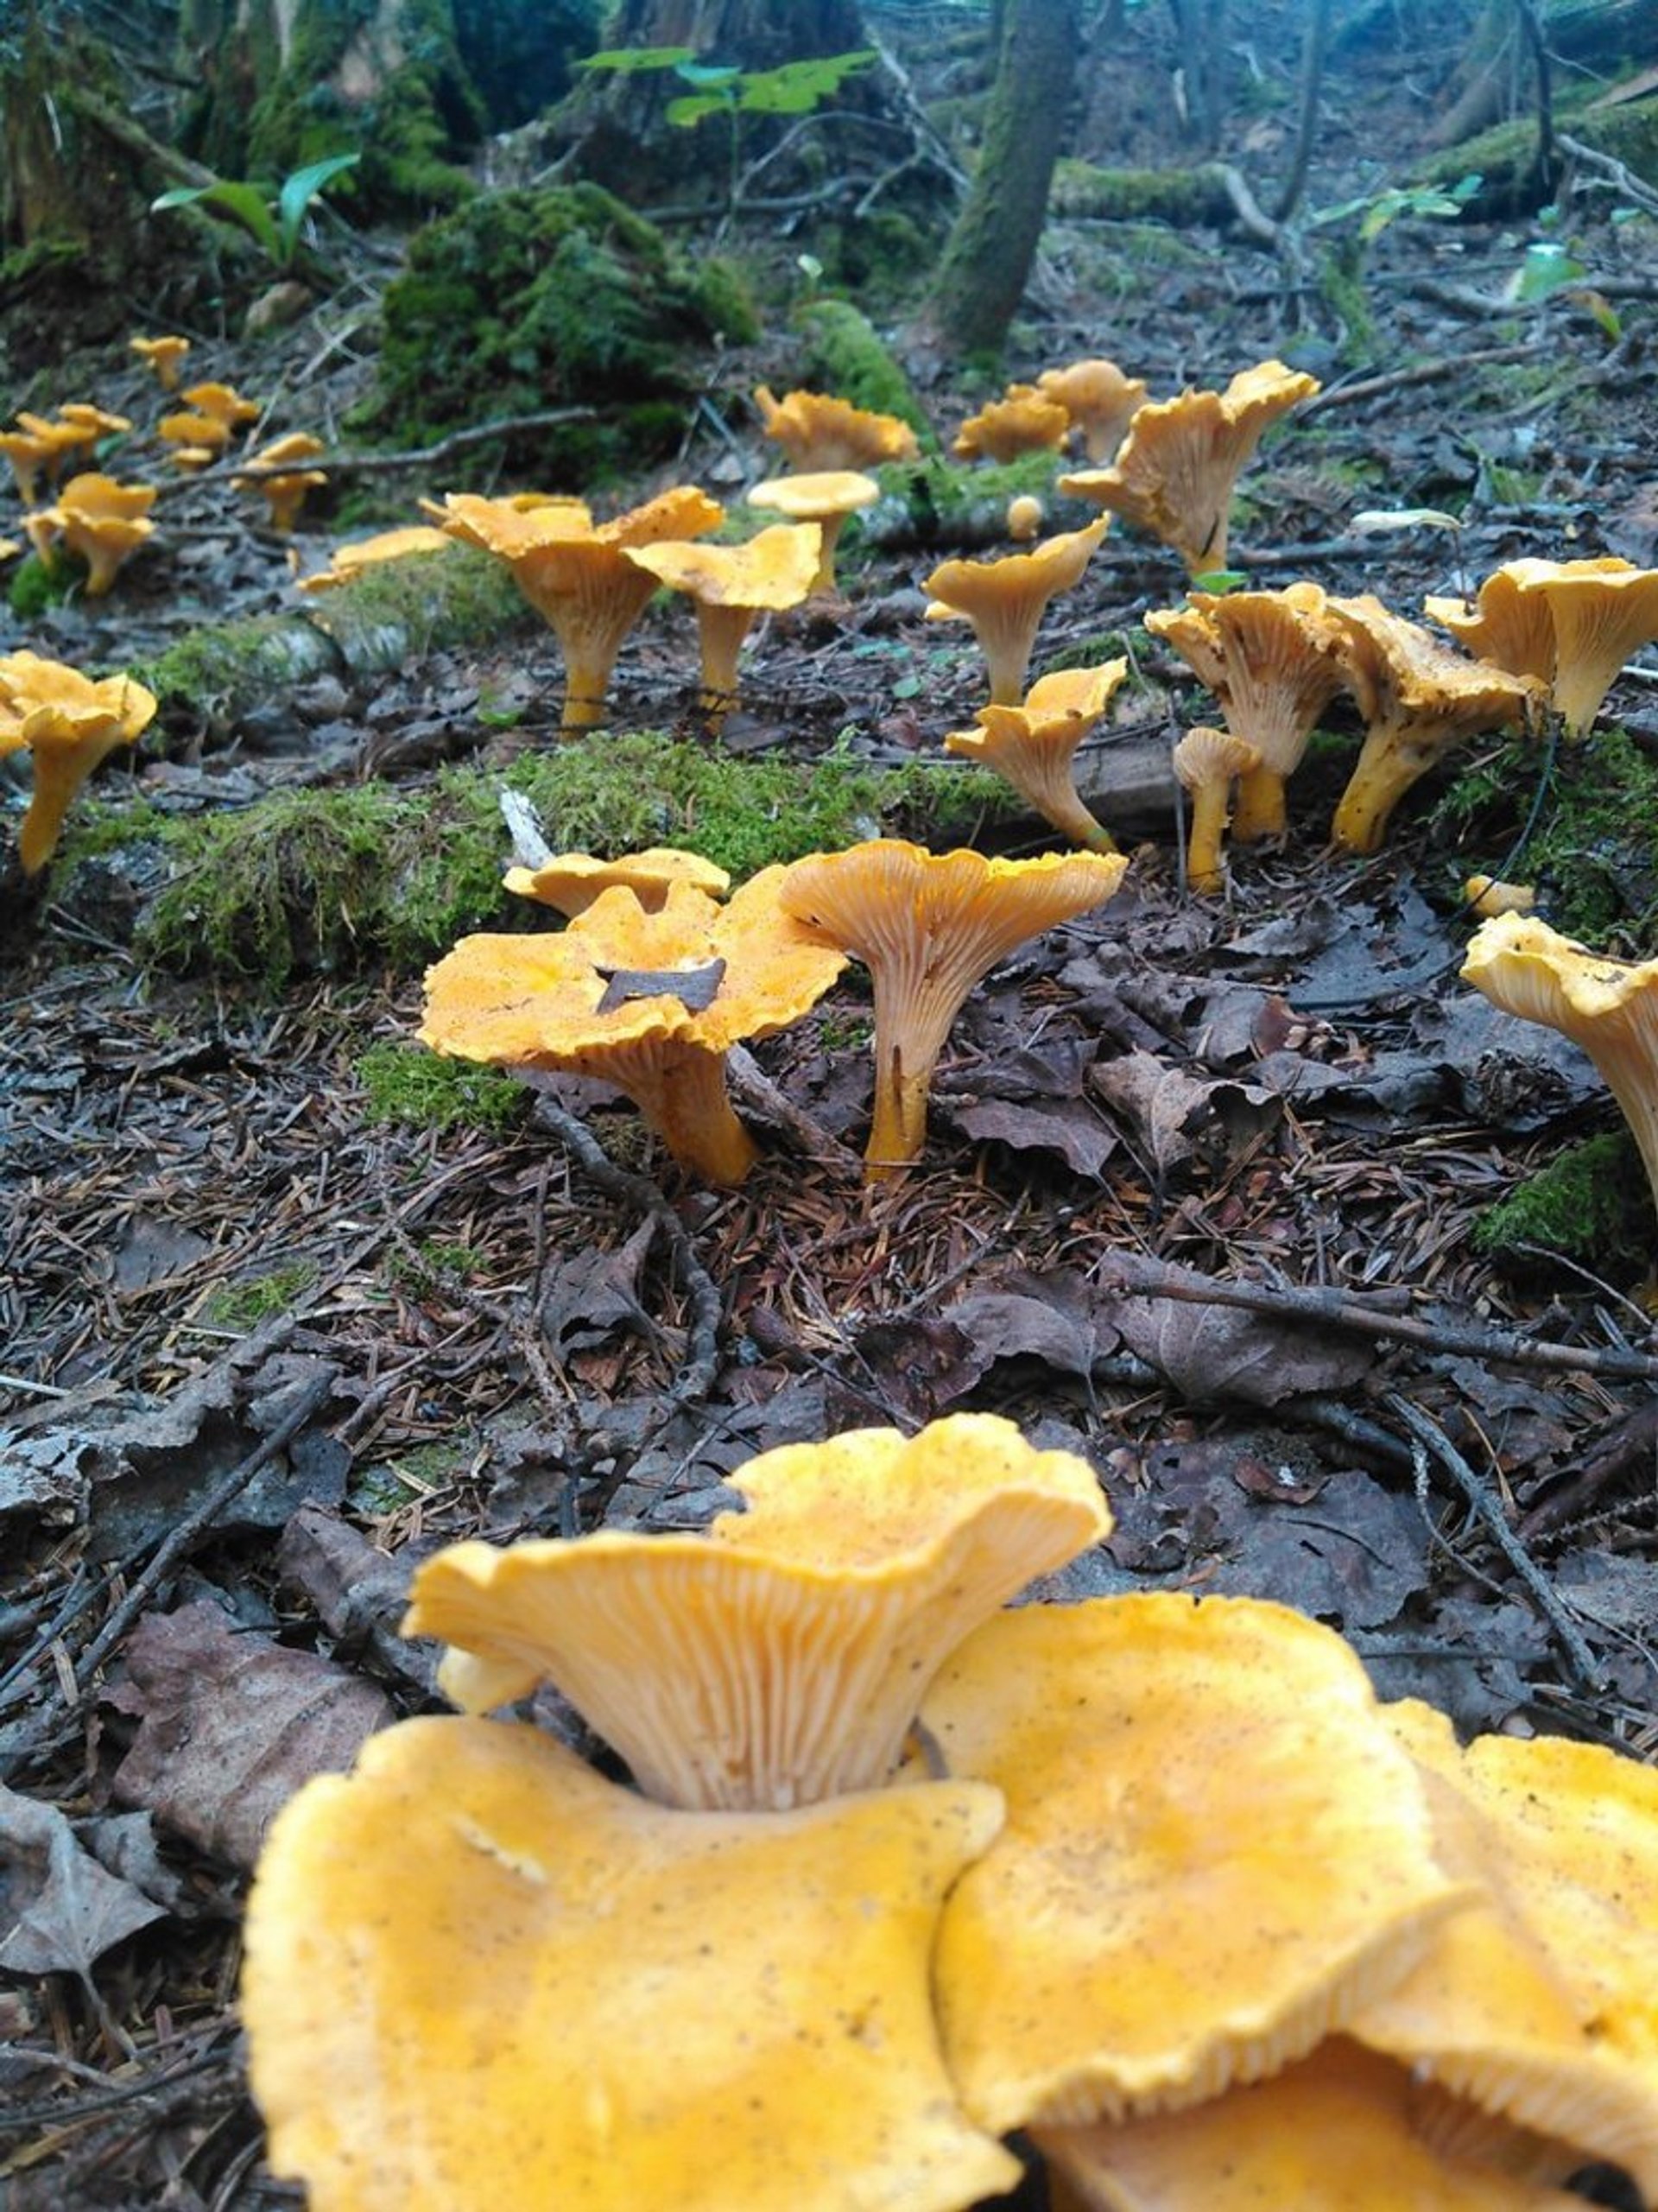 Mushrooms of the Olympic Peninsula